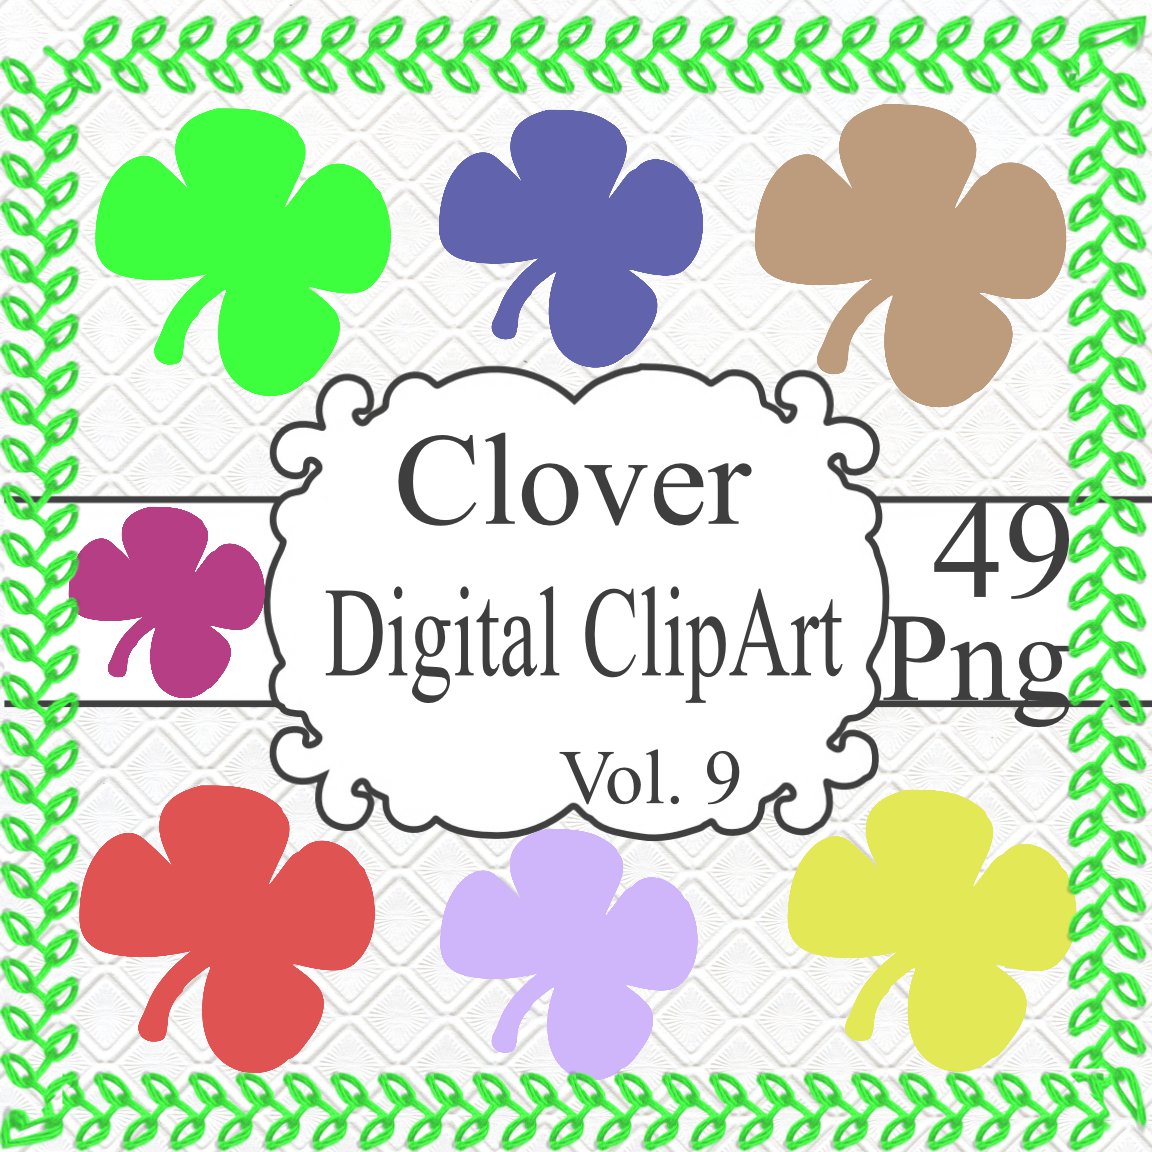 Clover Digital ClipArt Vol. 9